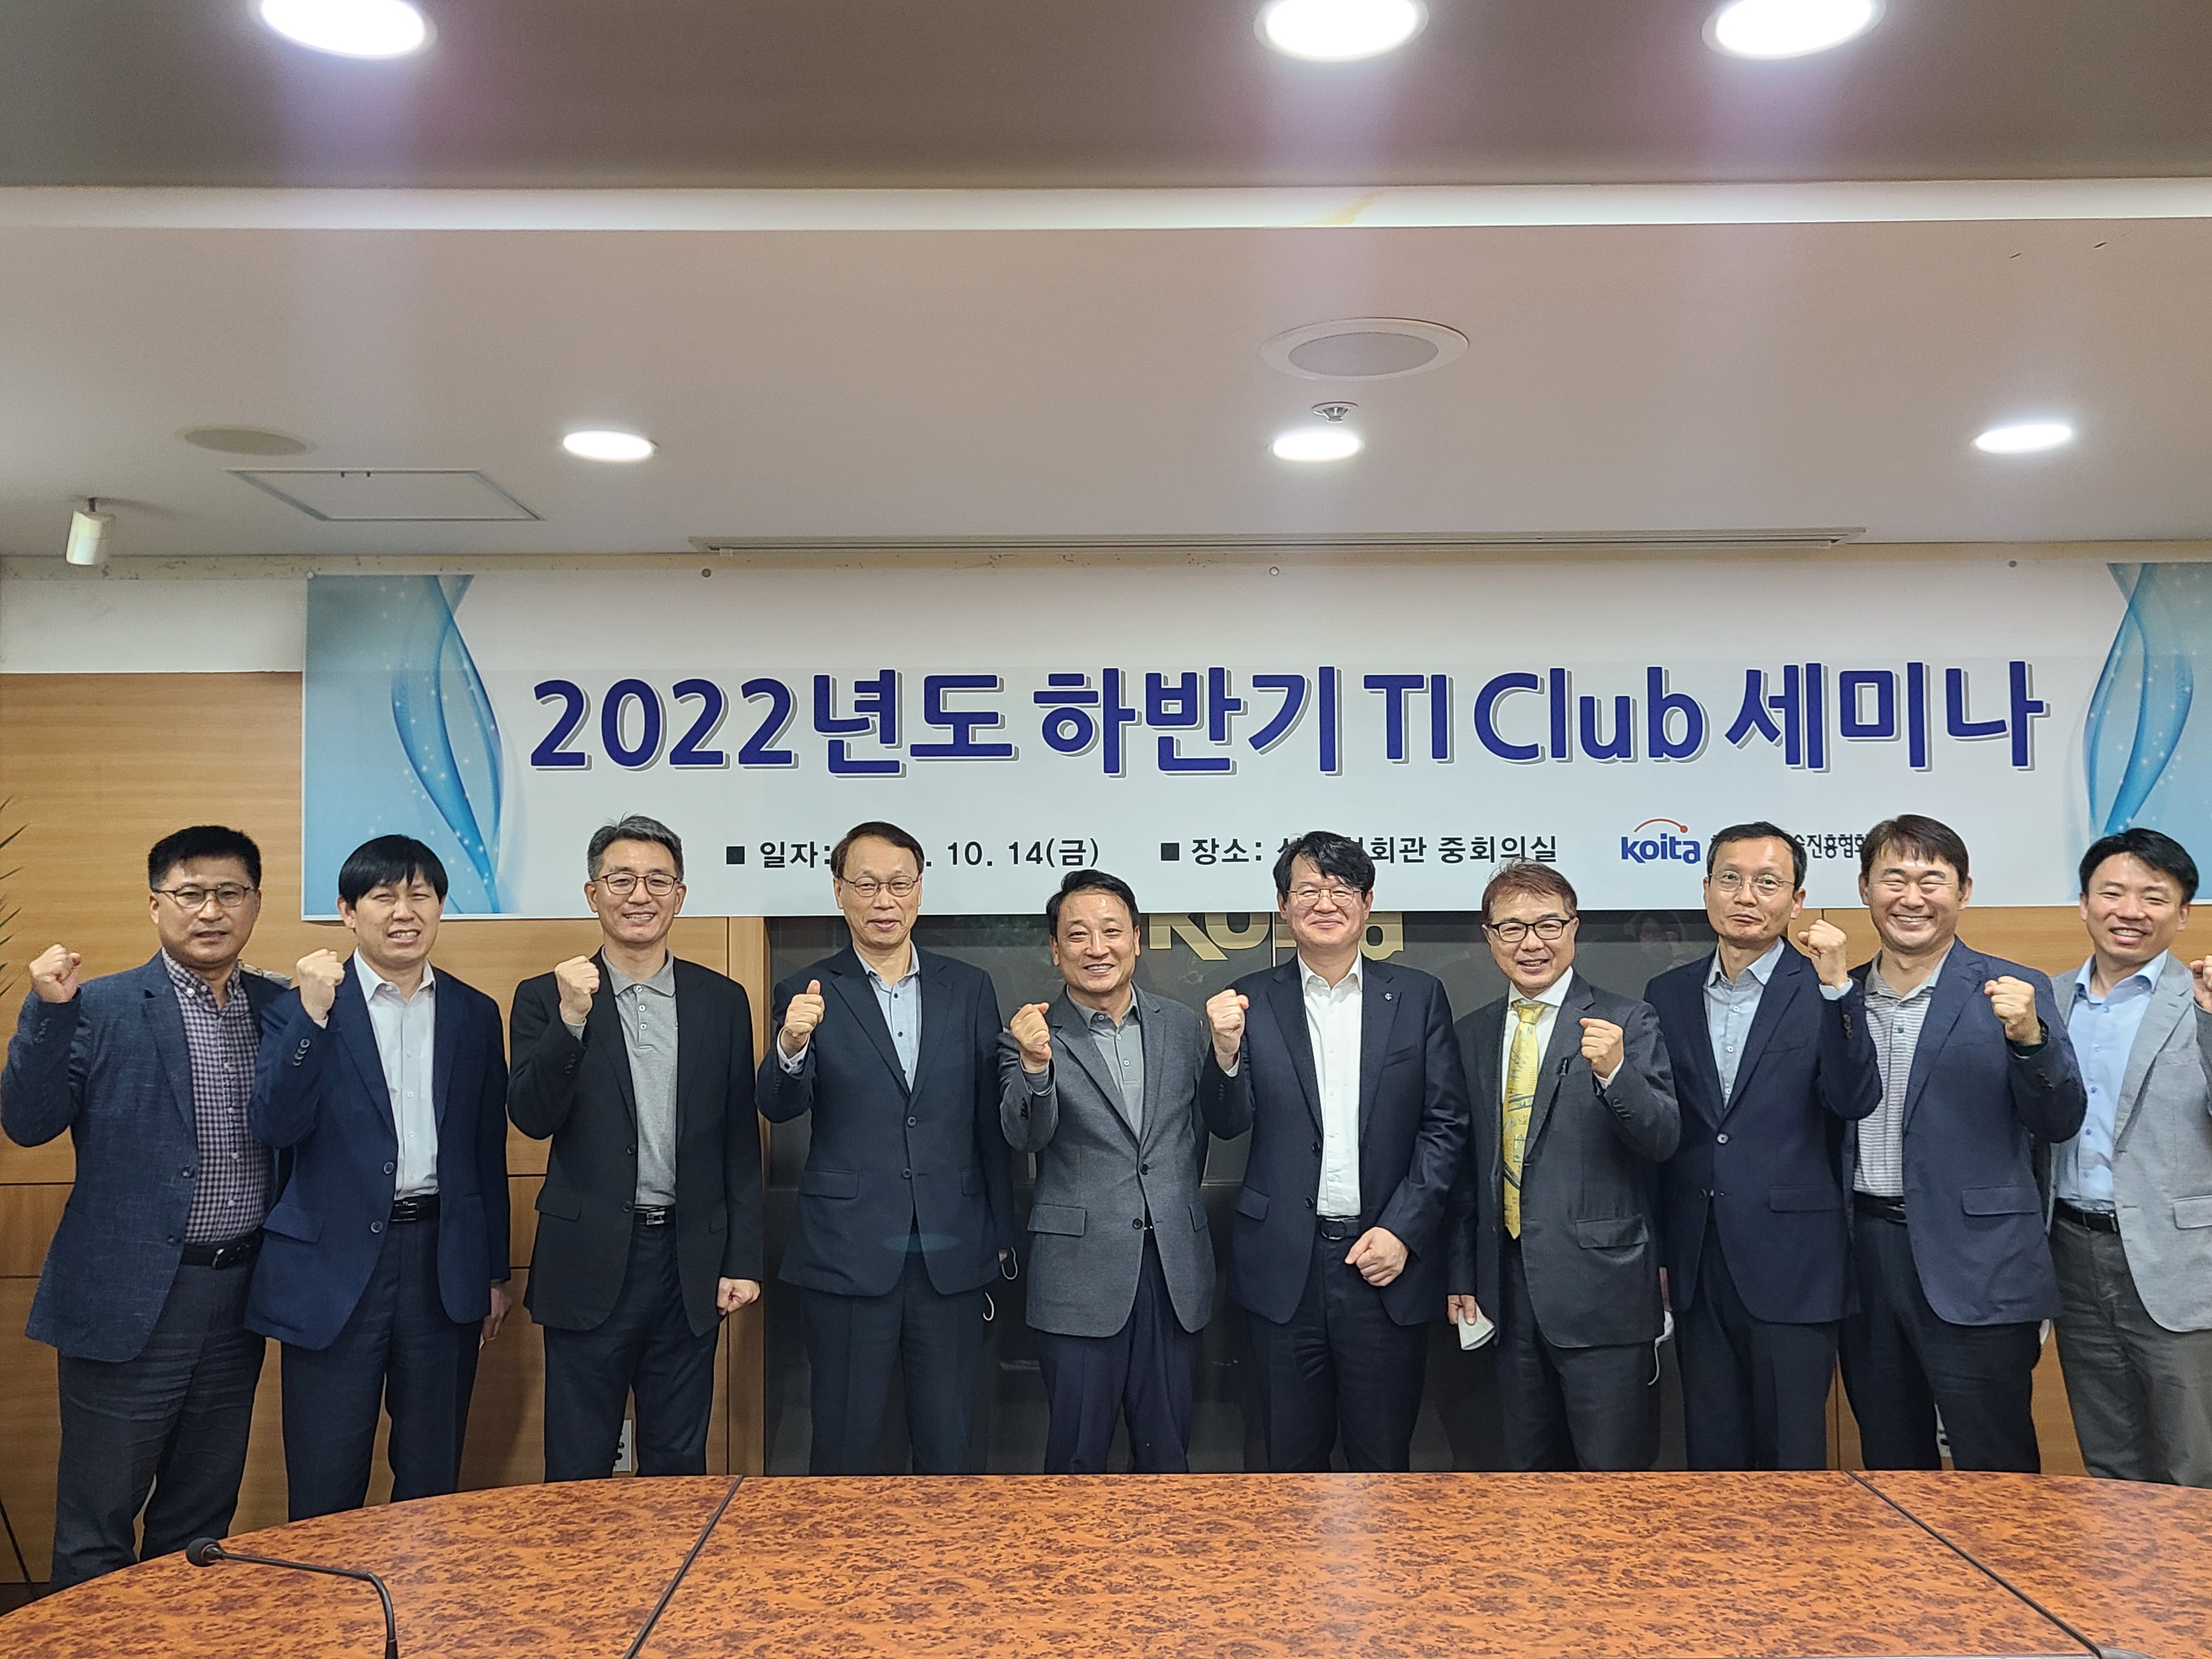 2022년도 하반기 TI Club 세미나 개최